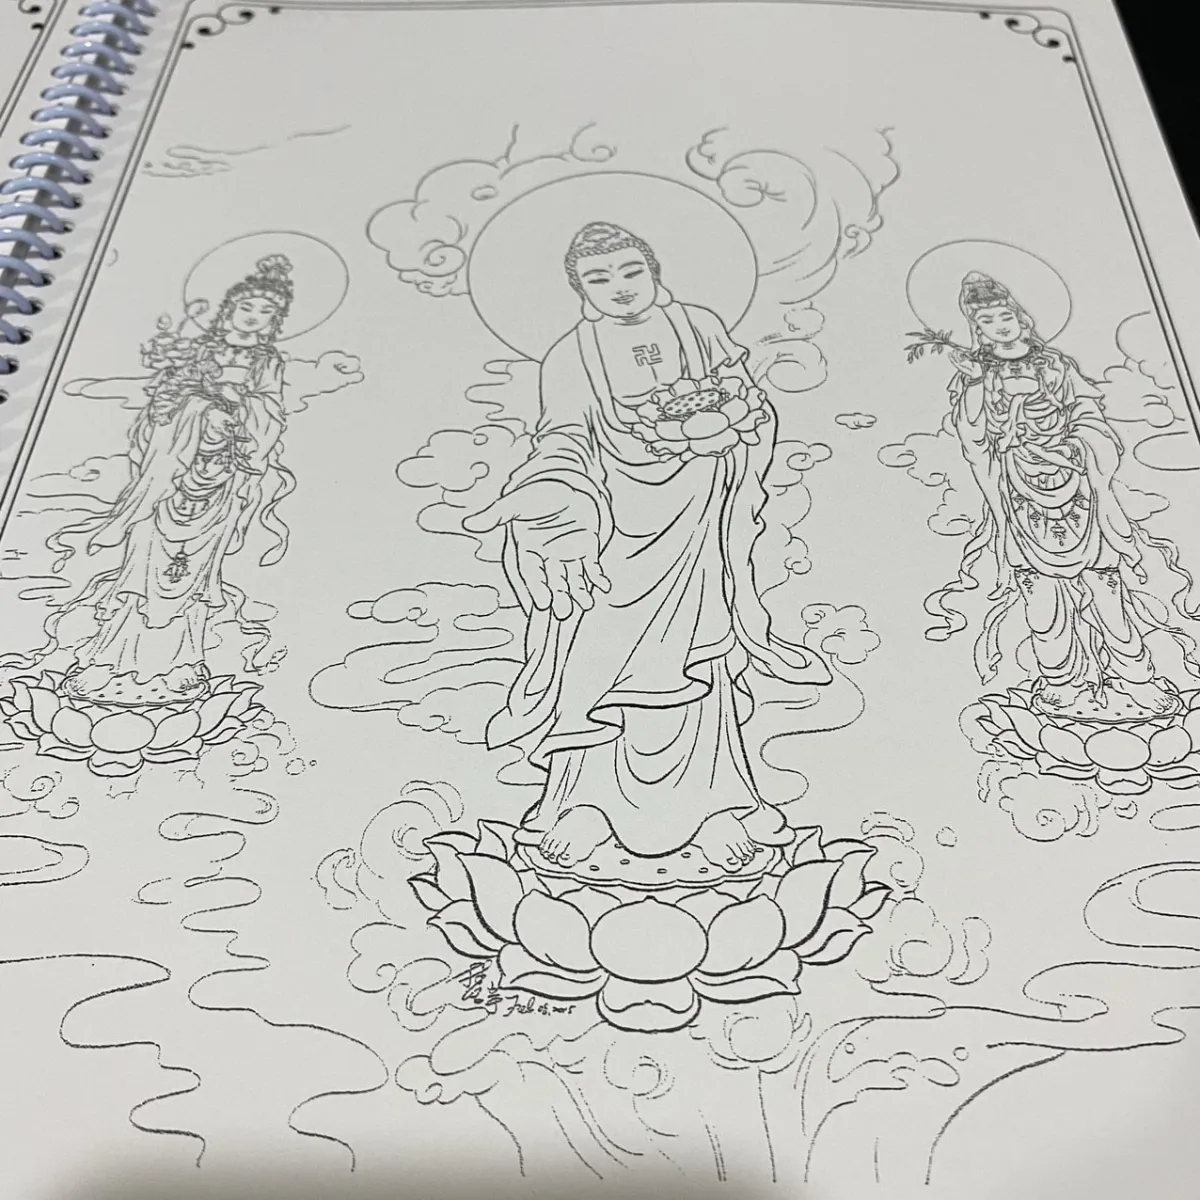 Vẽ Phật Ngồi Trên Hoa Sen Với Bánh Xe Pháp Trừu Tượng Hình minh họa Sẵn có   Tải xuống Hình ảnh Ngay bây giờ  iStock